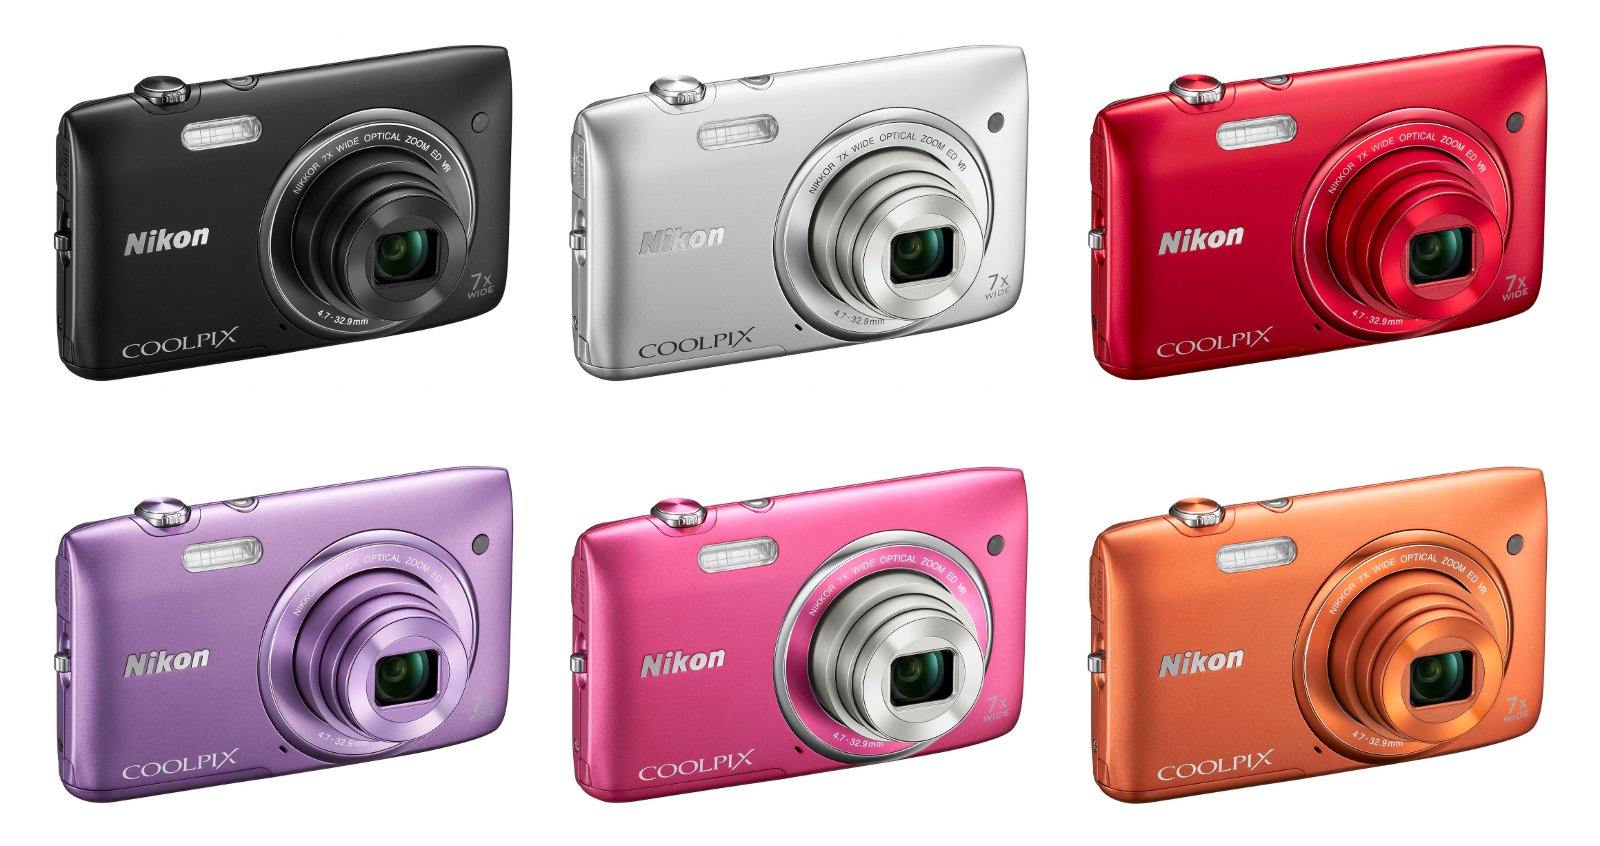 Các màu của mẫu máy ảnh giá rẻ này khá đa dạng, đem đến nhiều sự lựa chọn cho người mua